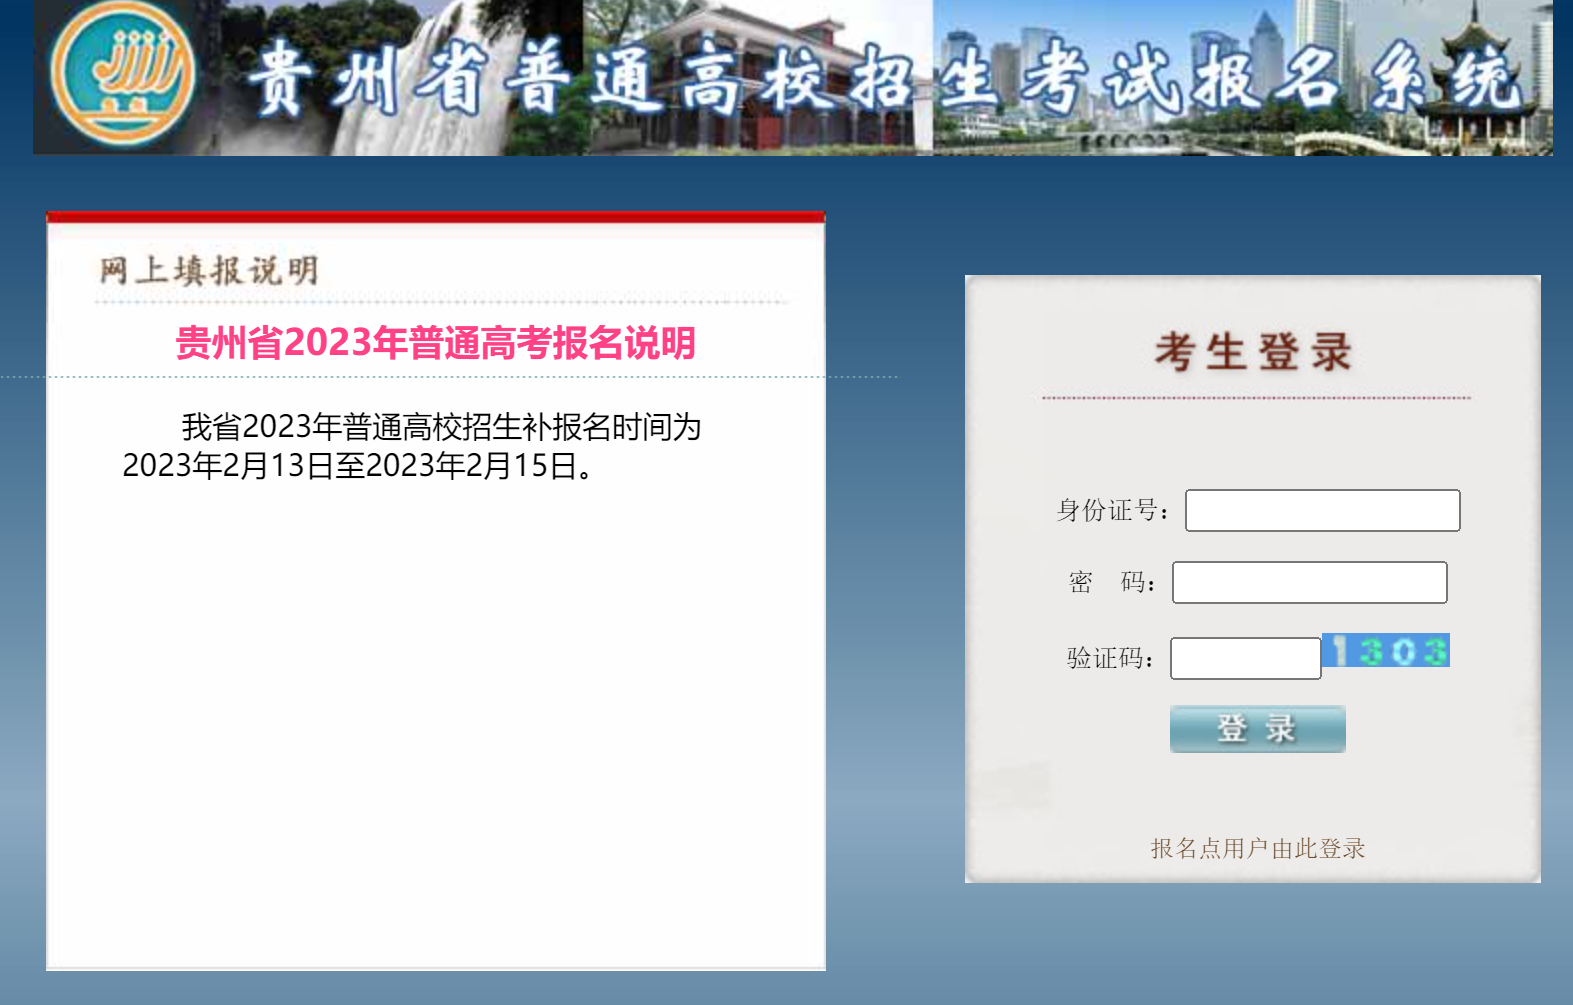 2023年贵州高考航空服务艺术与管理统考专业成绩查询官网入口：http